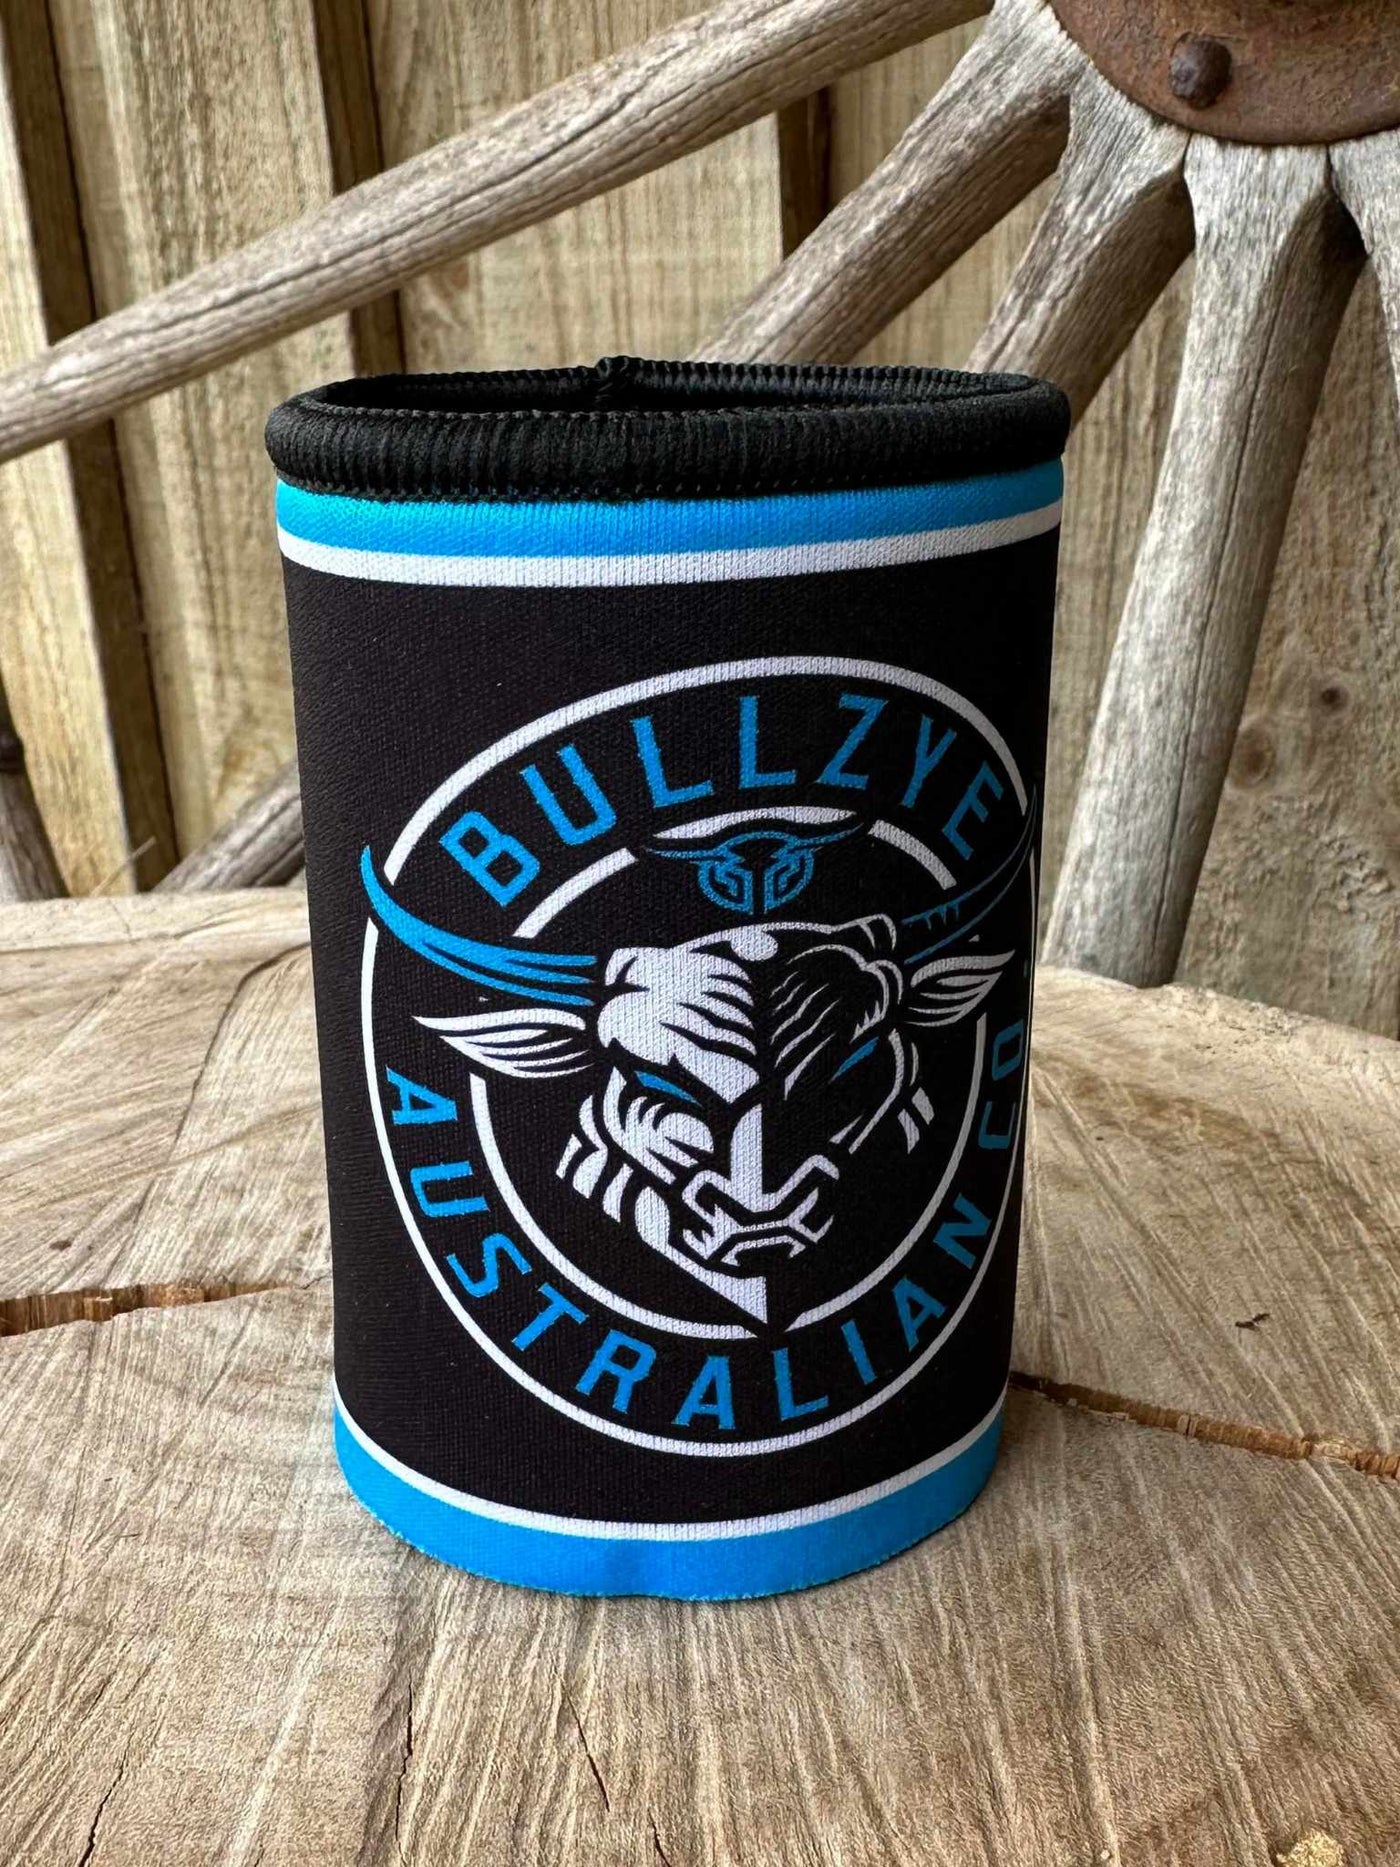 Bullzye -  Stubby Holder Cooler Black/Blue BULL